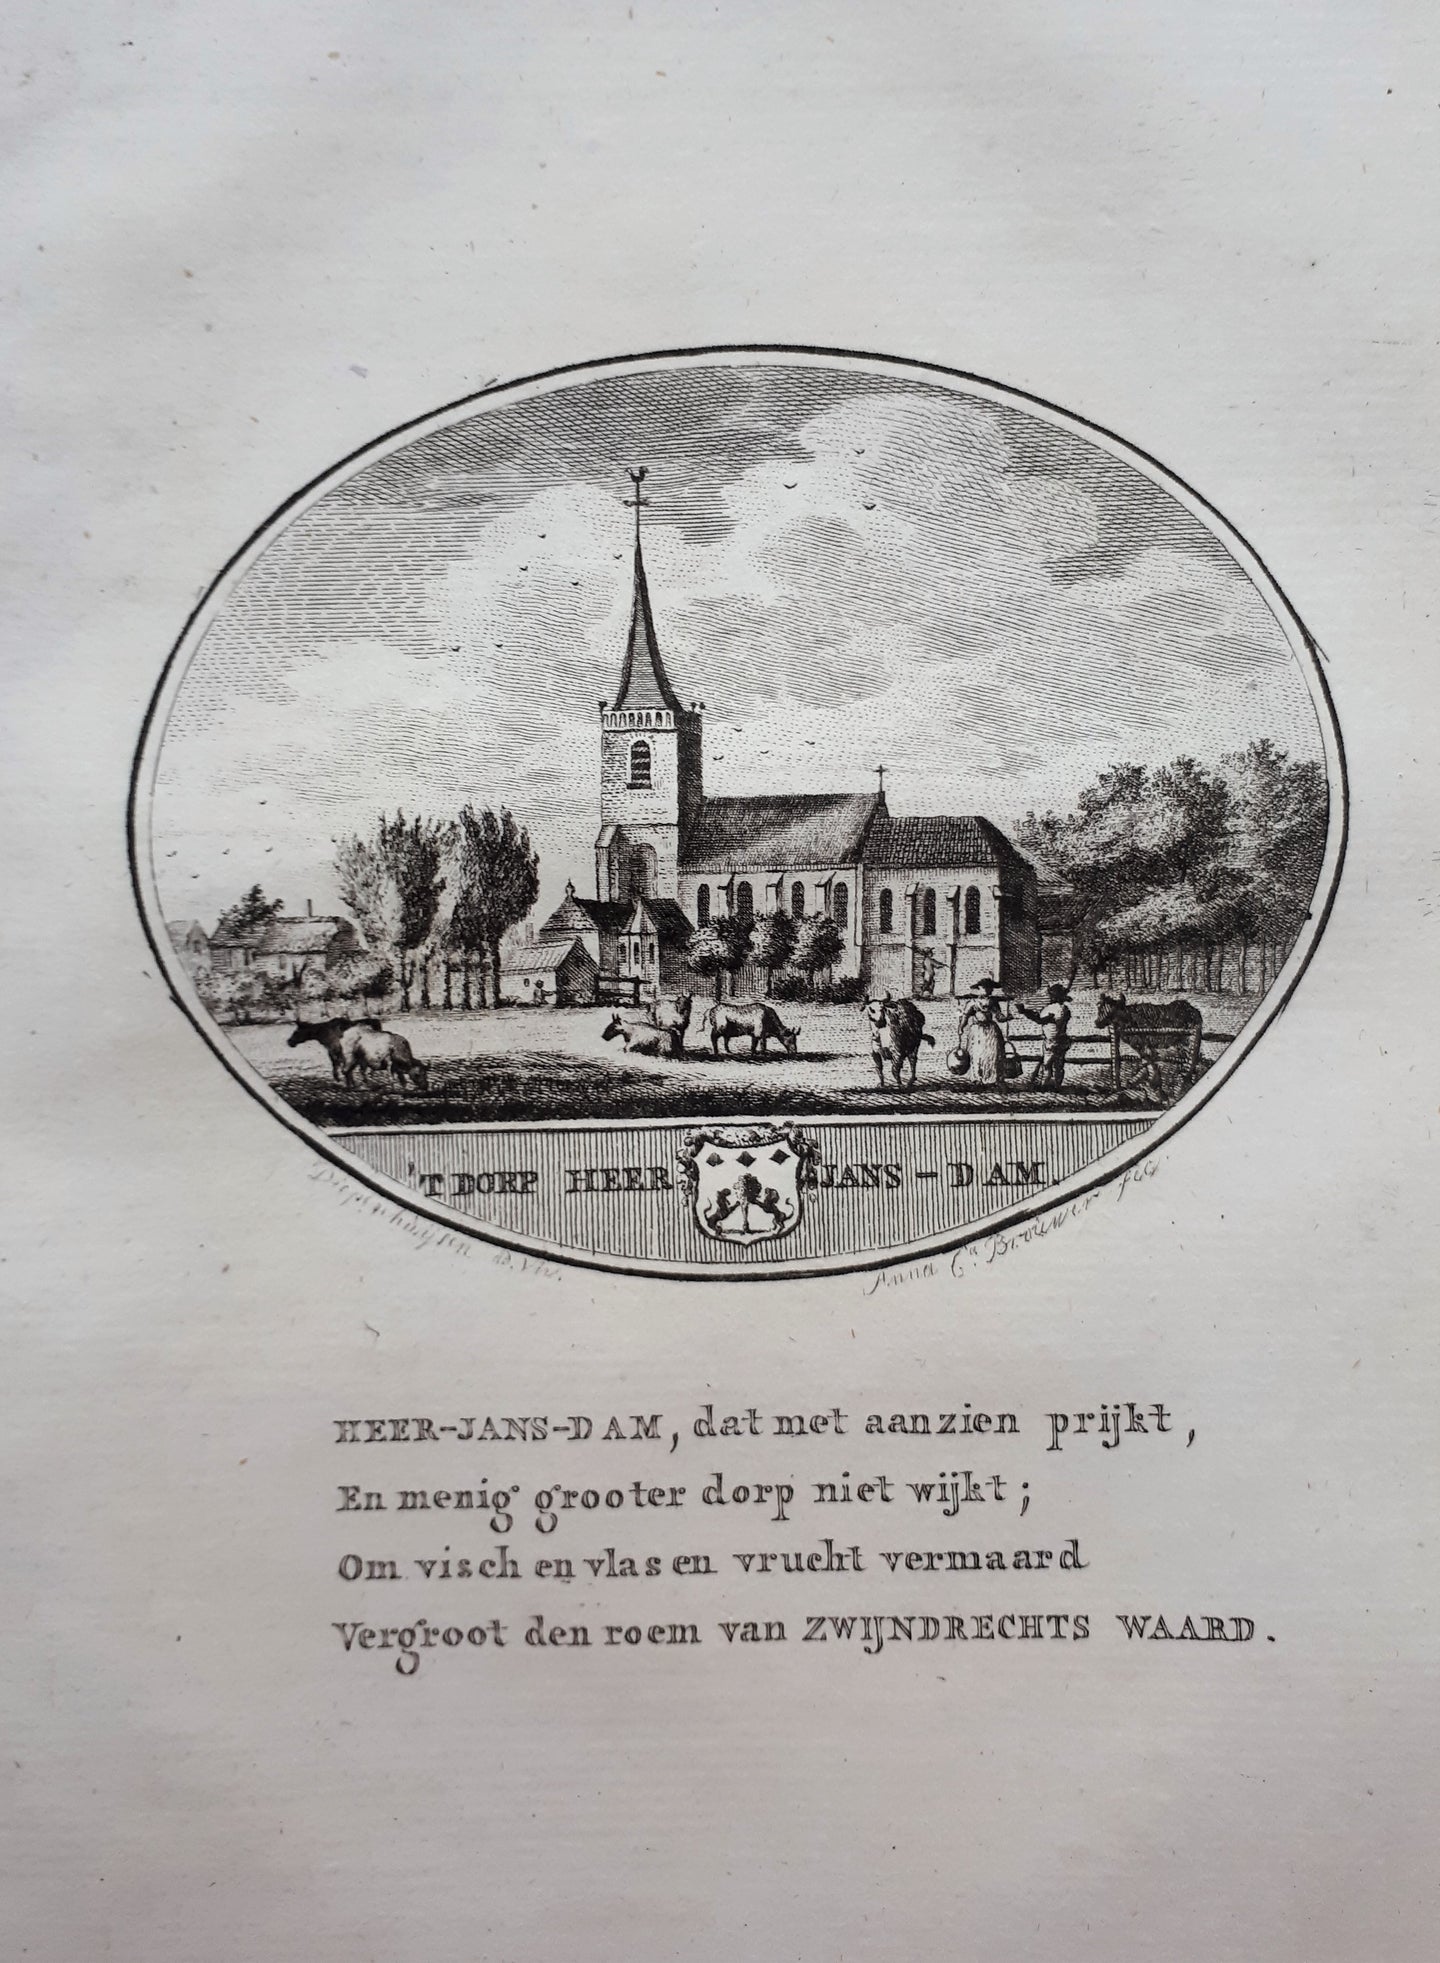 HEERJANSDAM - Van Ollefen & Bakker - 1793